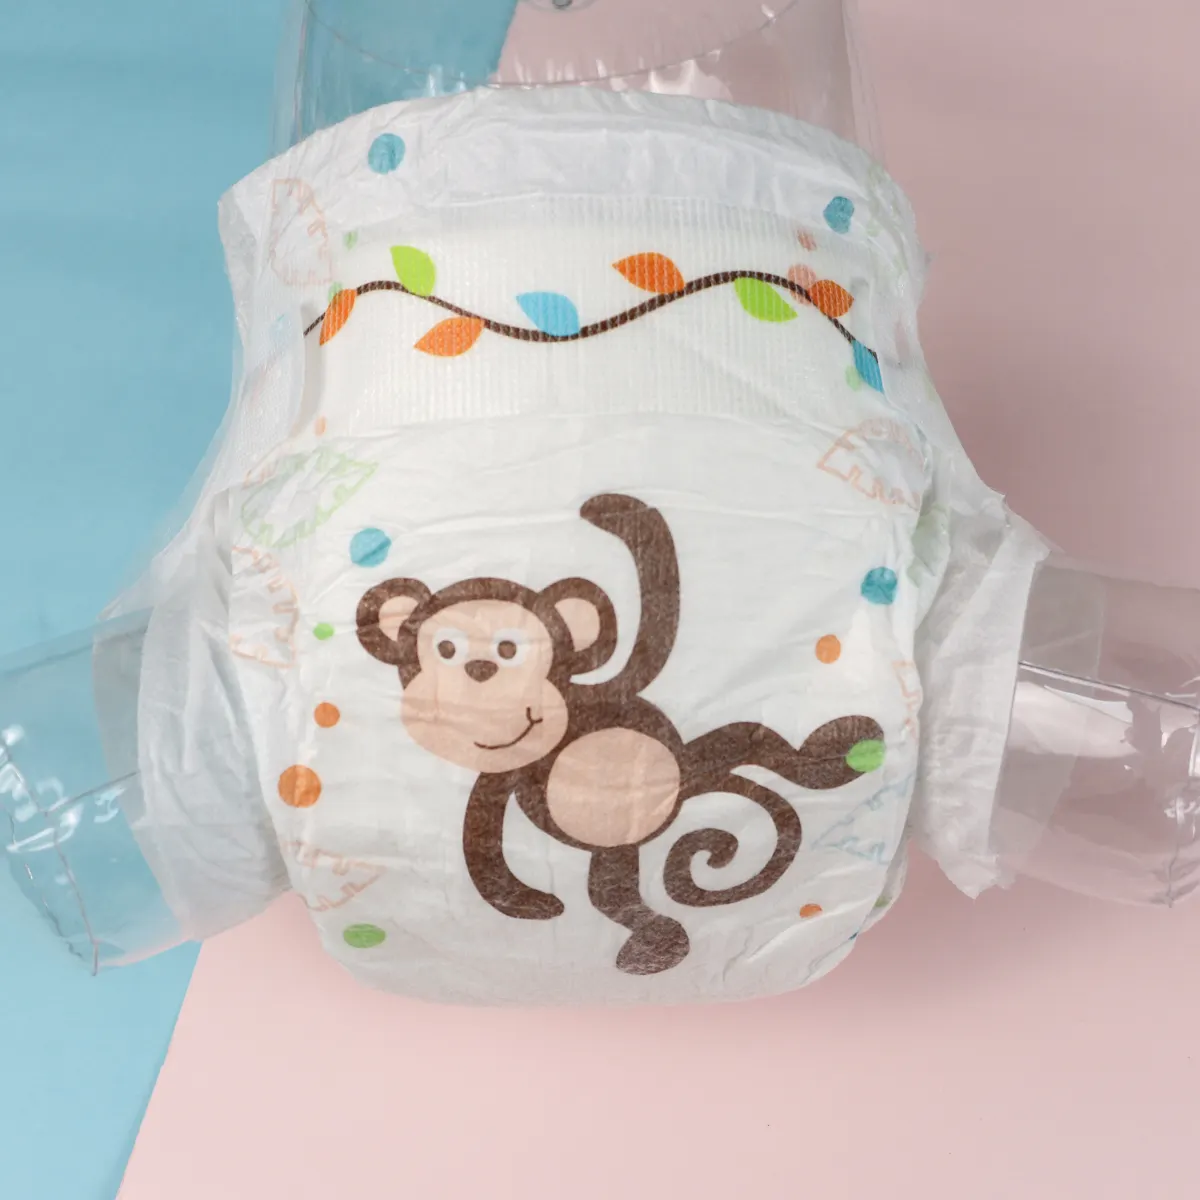 Ücretsiz örnek ucuz uykulu bebek pantolon fabrika çin'de güzel bebek pantolon üreticileri tek kullanımlık bebek pantolon OEM hizmeti